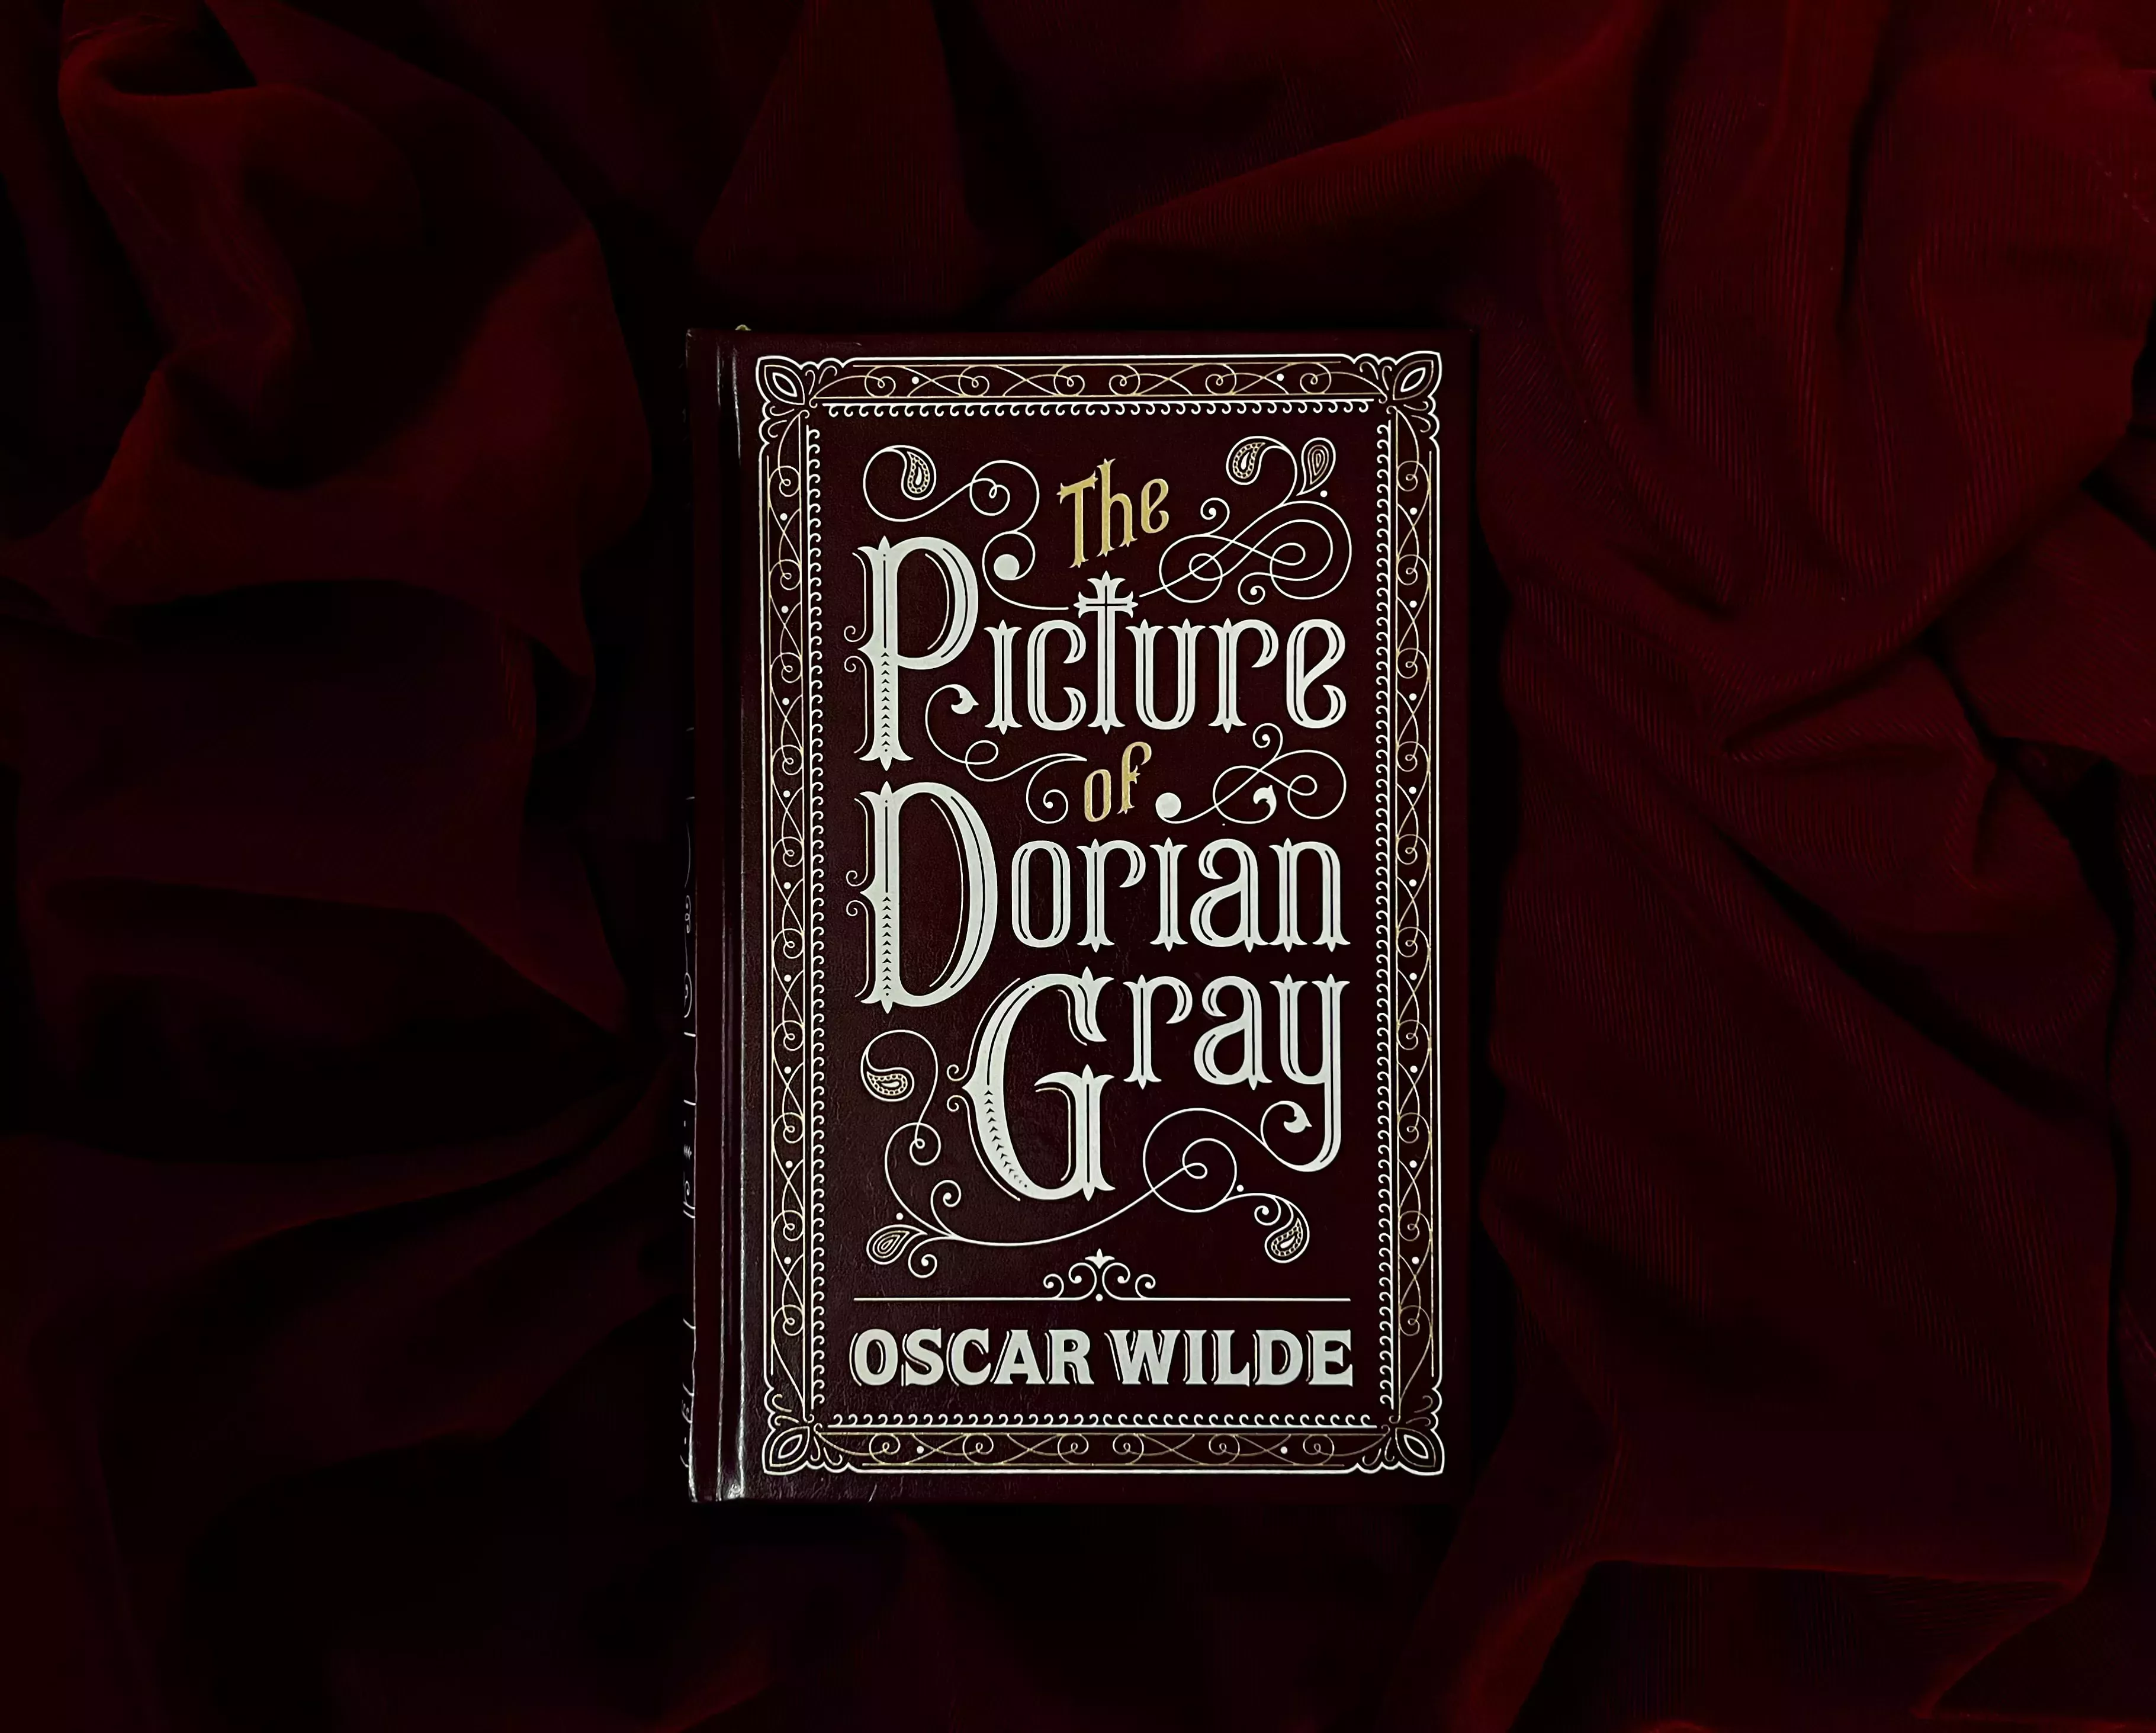 El retrato de Dorian Gray 